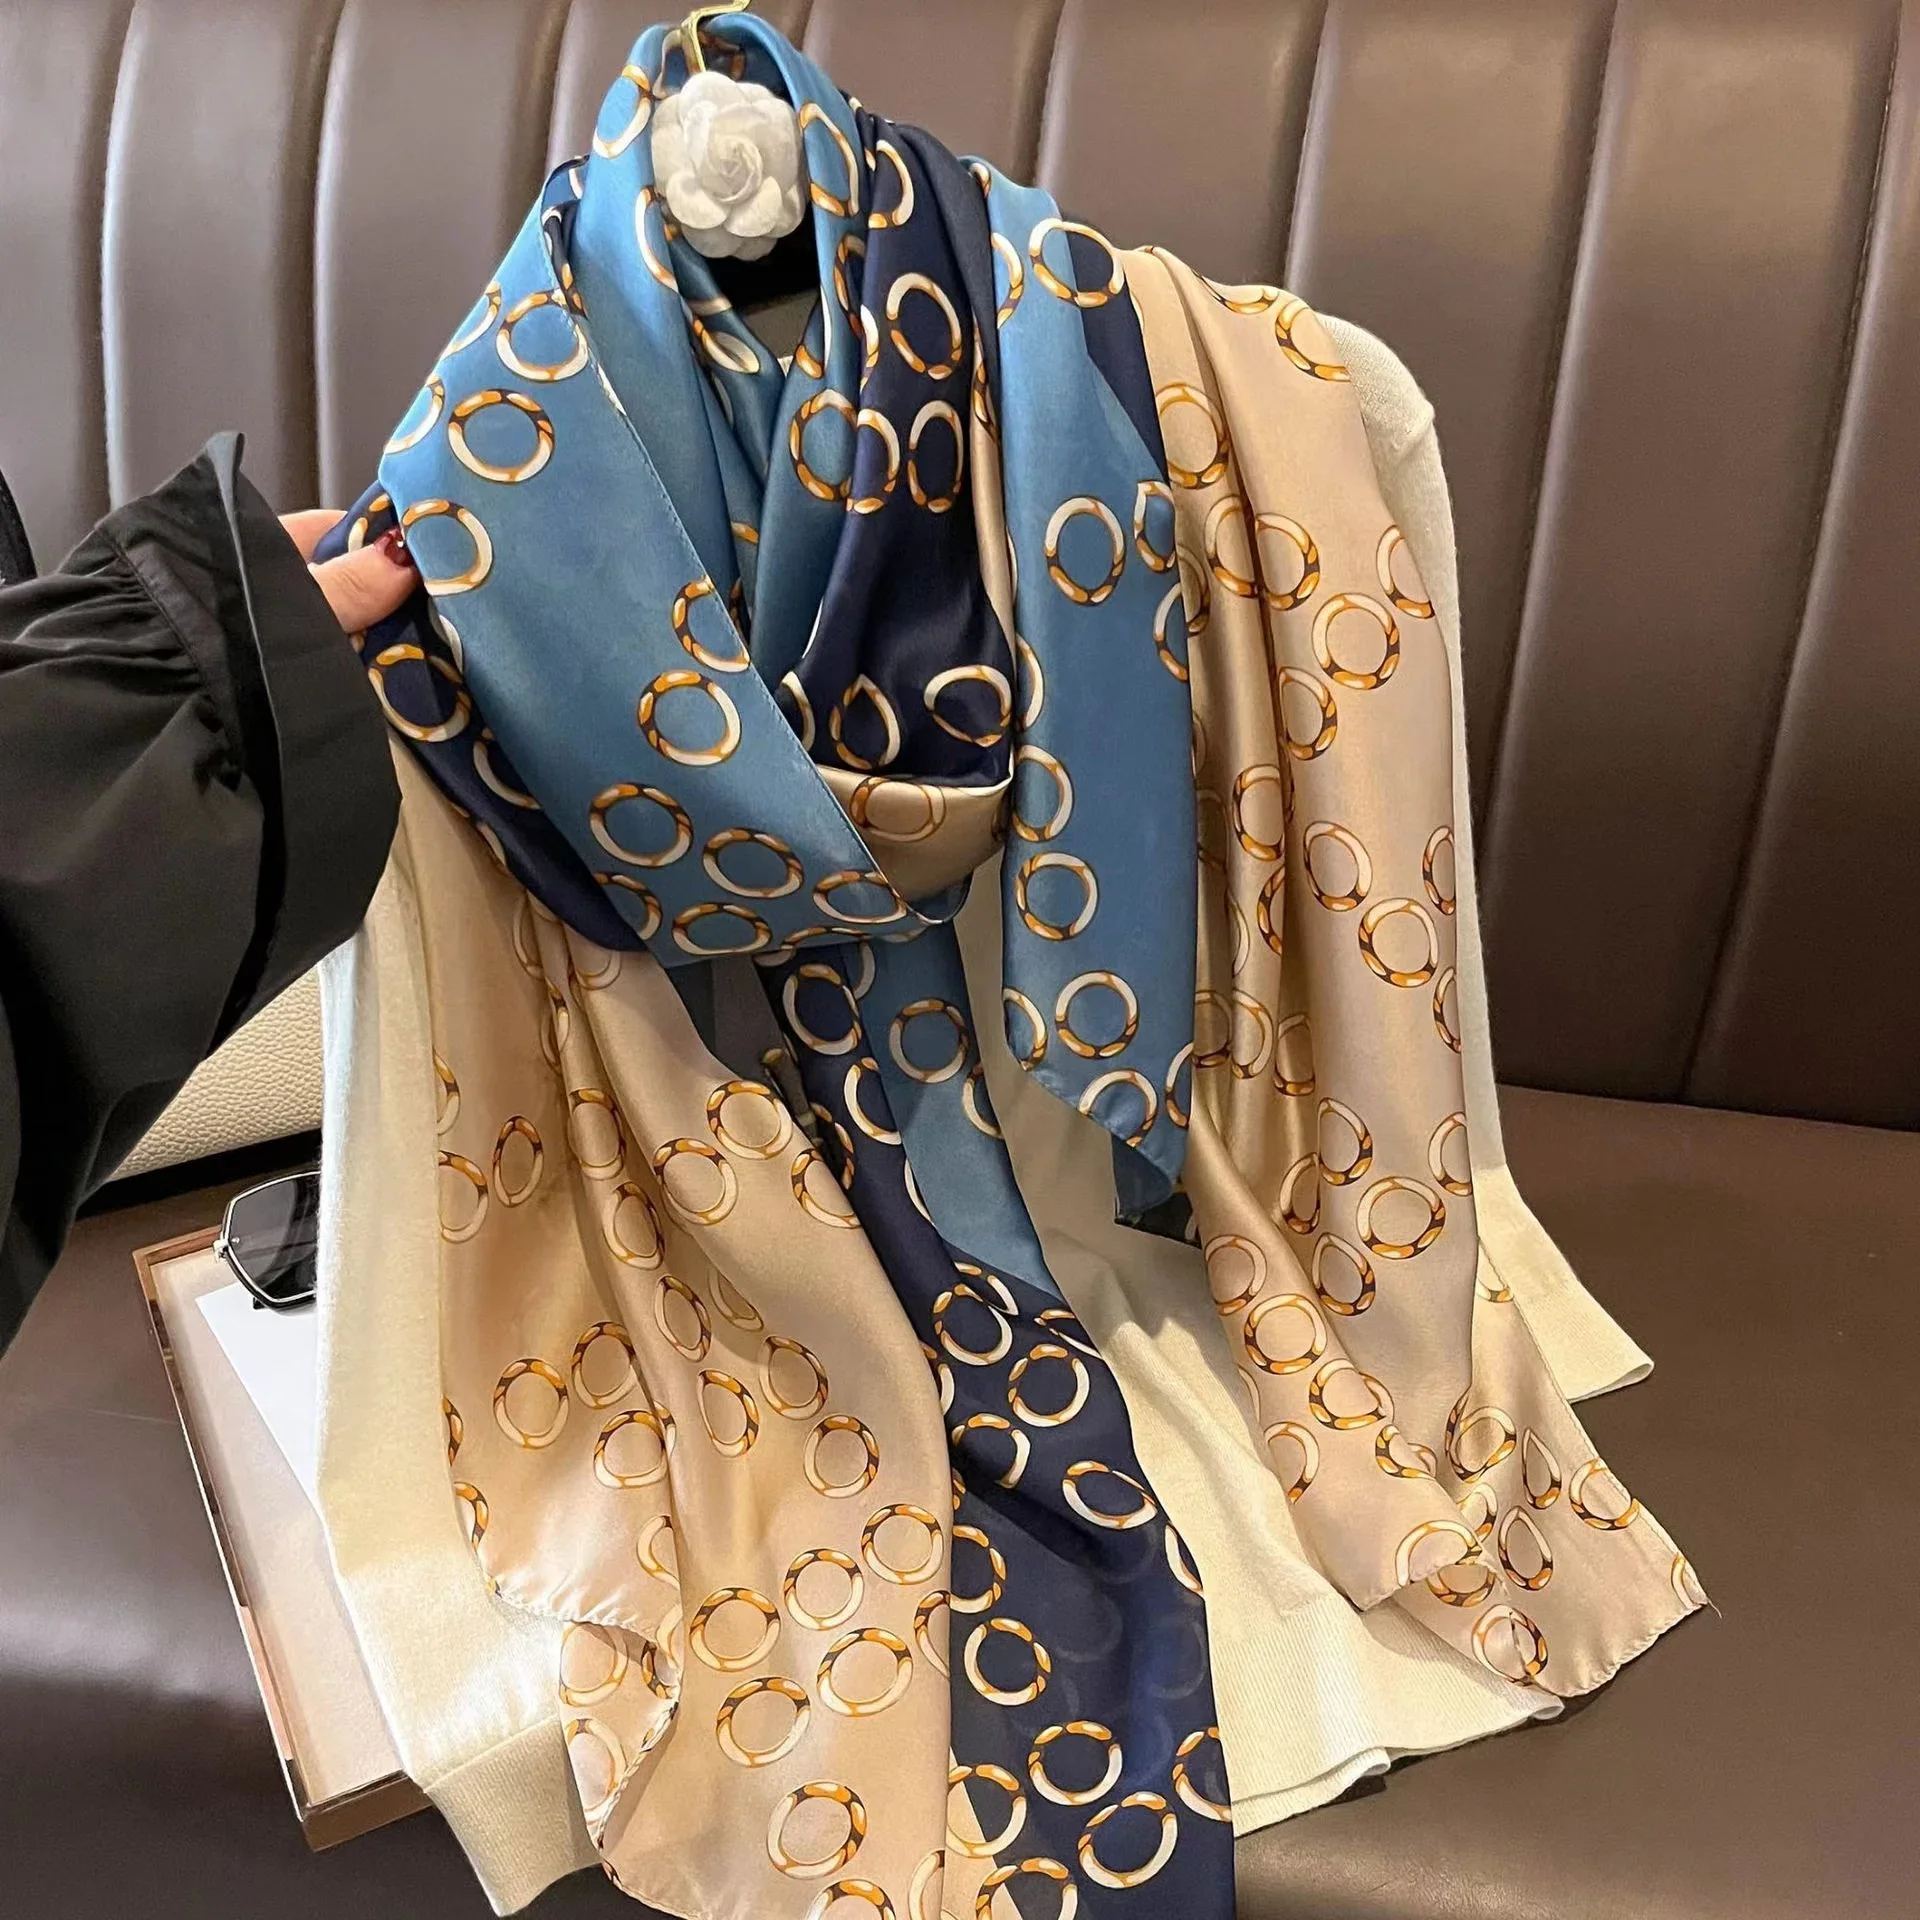 Frauen Mode druck Seiden schal Luxusmarke warm 180x90cm Schals beliebte Wut Satin Finish Schal die vier Jahreszeiten Design Hijab